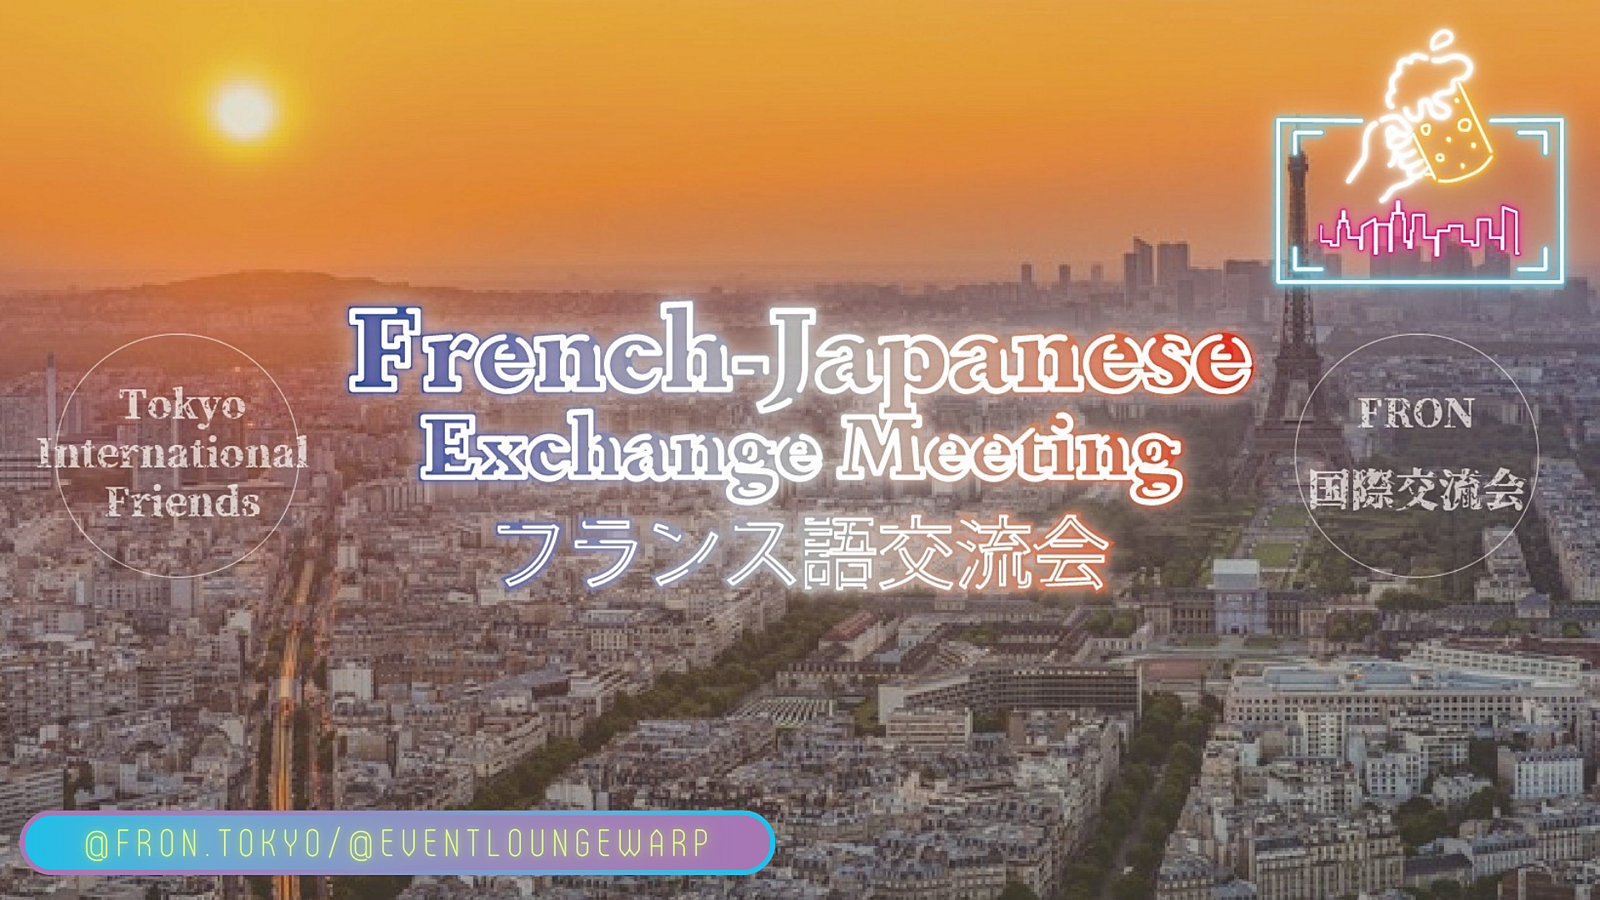 2/29(木)19:30~ フランス語交流会 🇫🇷 French-Japanese Exchange Meeting☆un jour bissextile♪